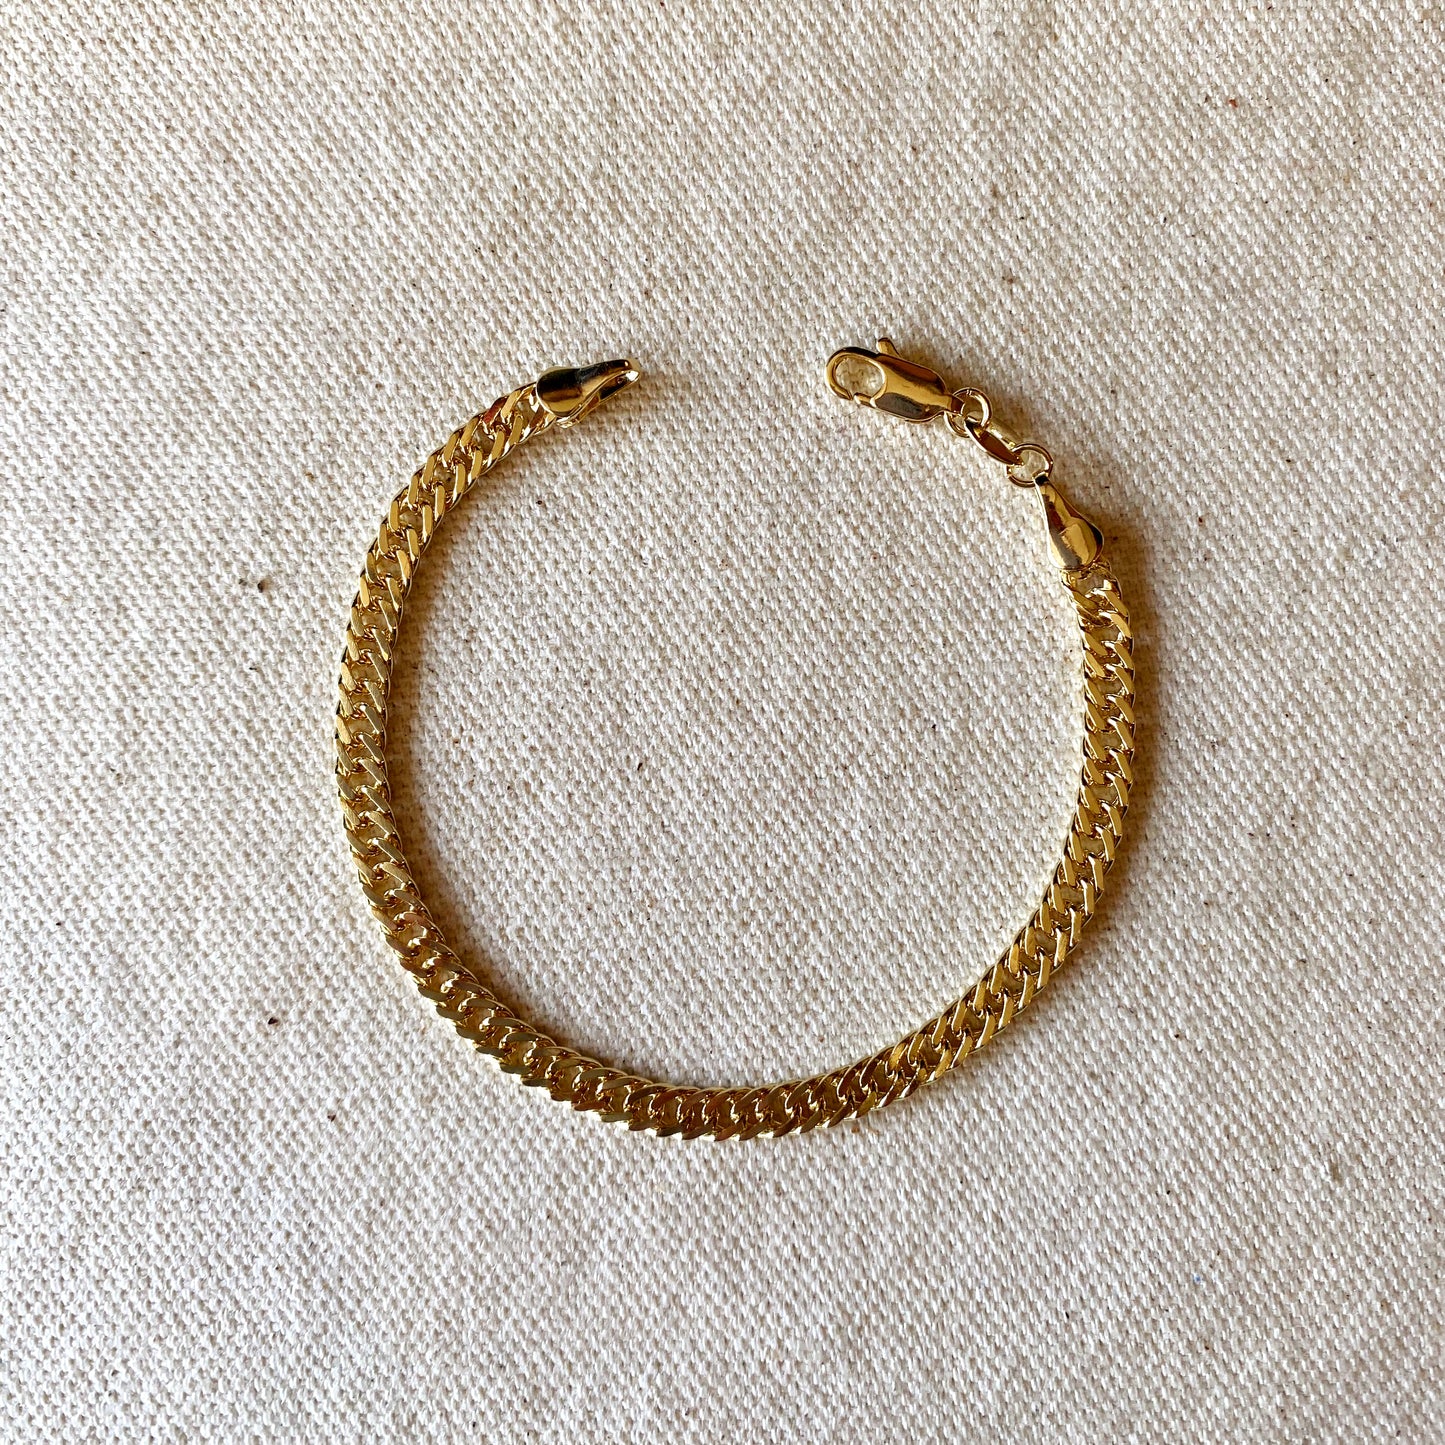 18k Gold Filled 4.0mm Curb Chain Bracelet